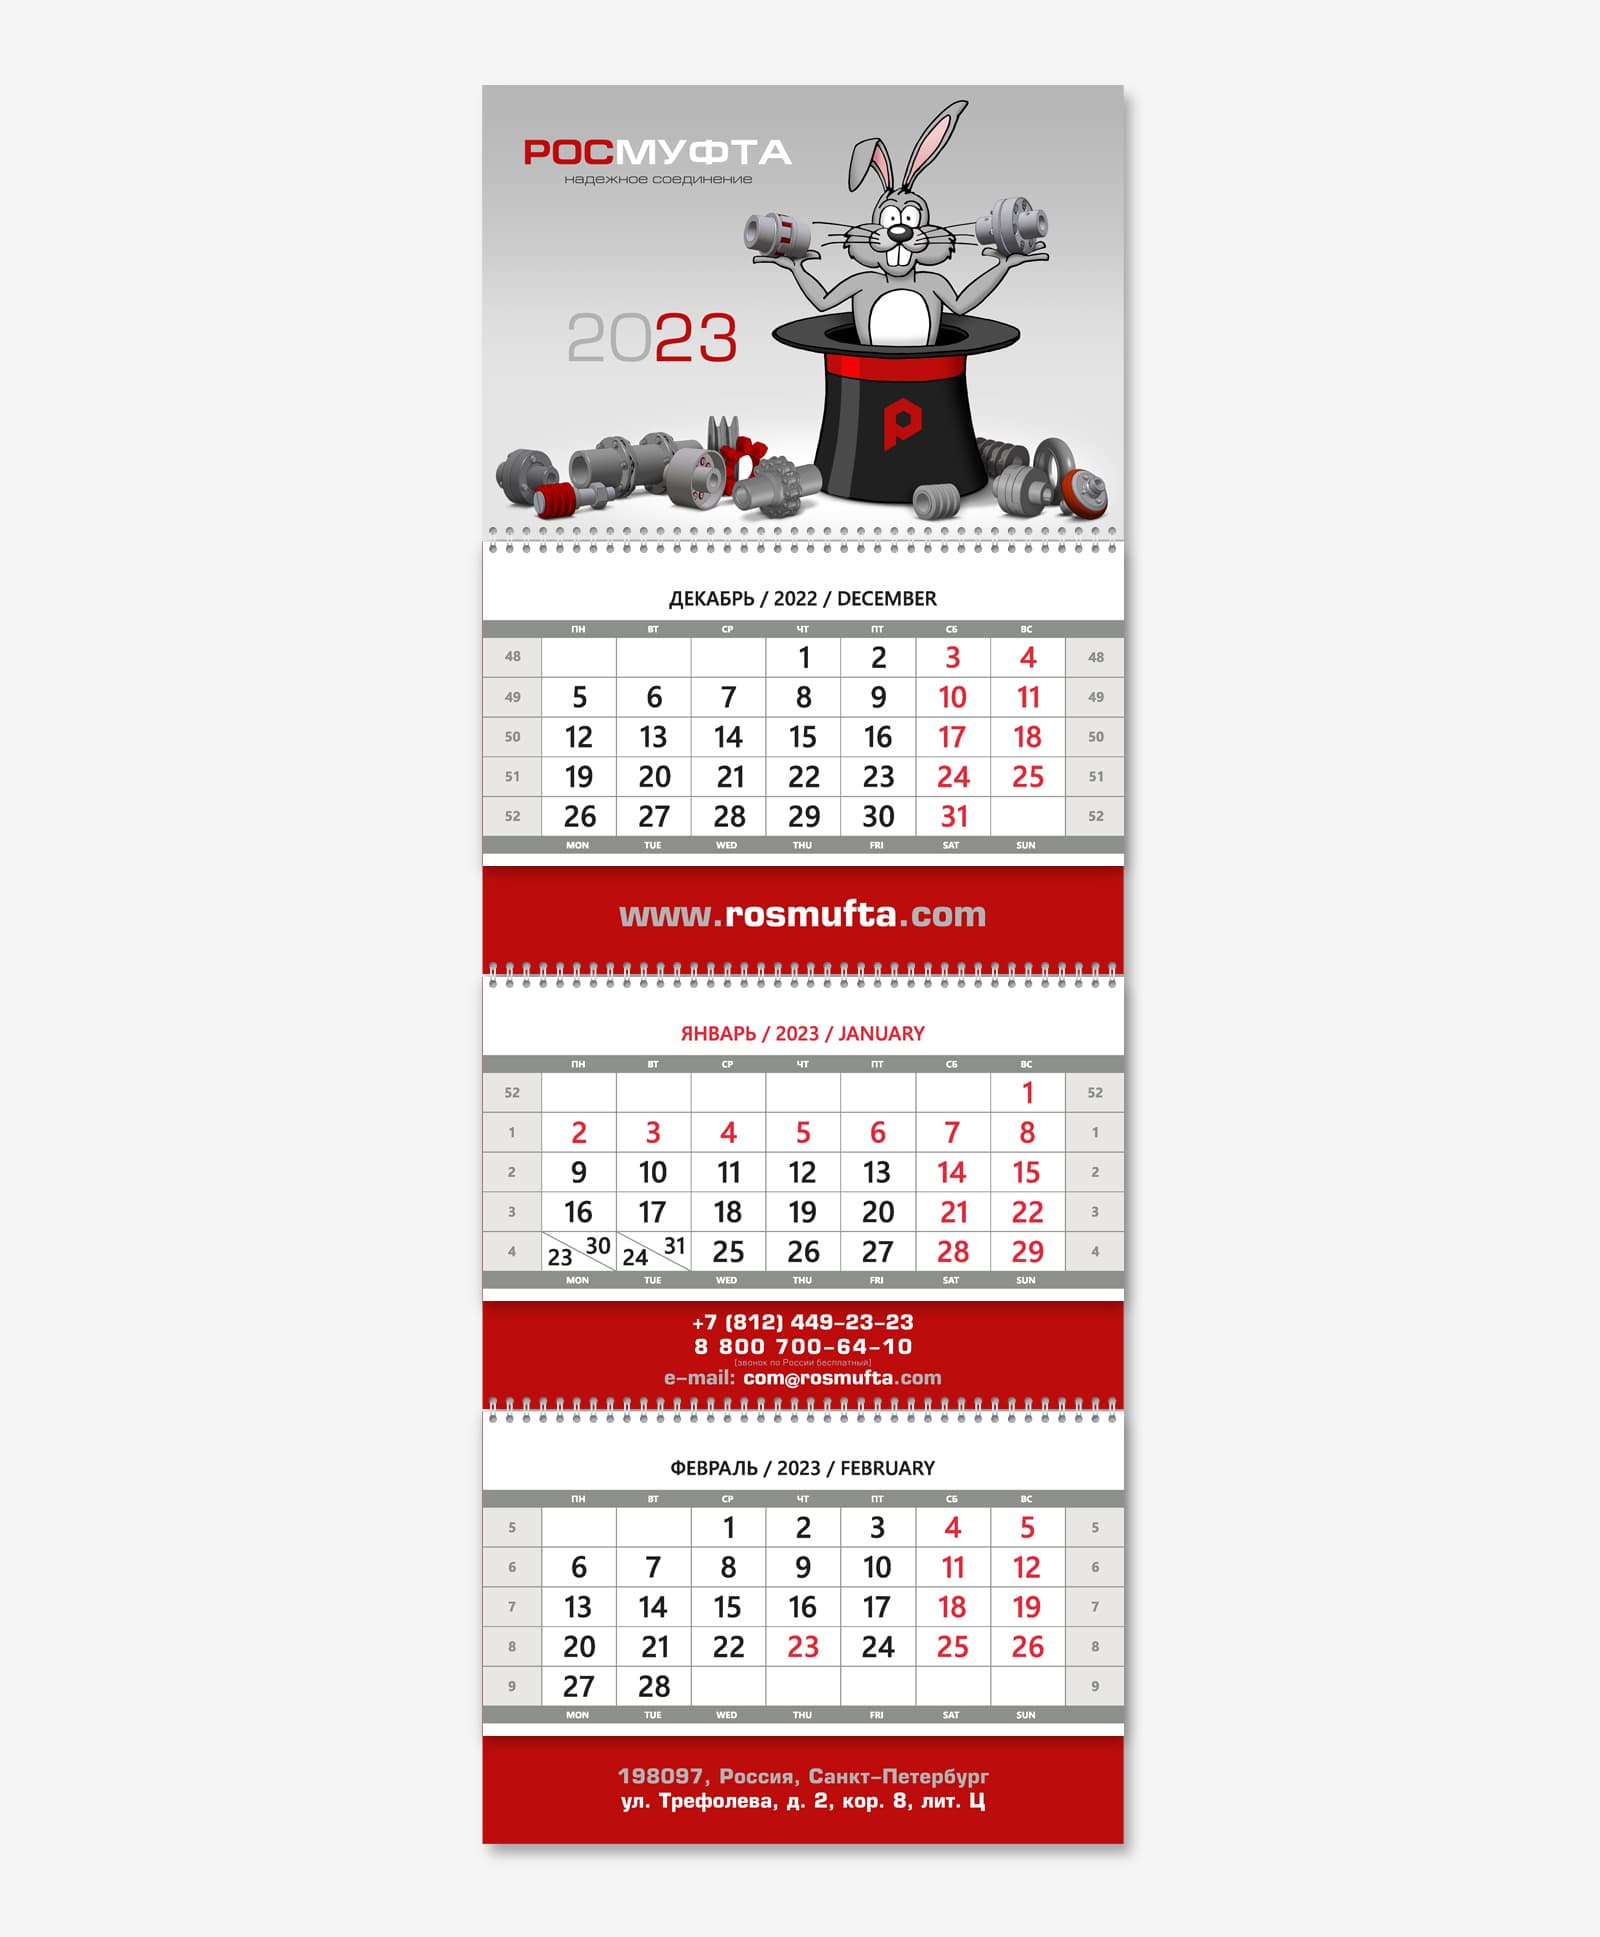 Нарисовали календарь Трио для производственной компании «Росмуфта» на 2023 год